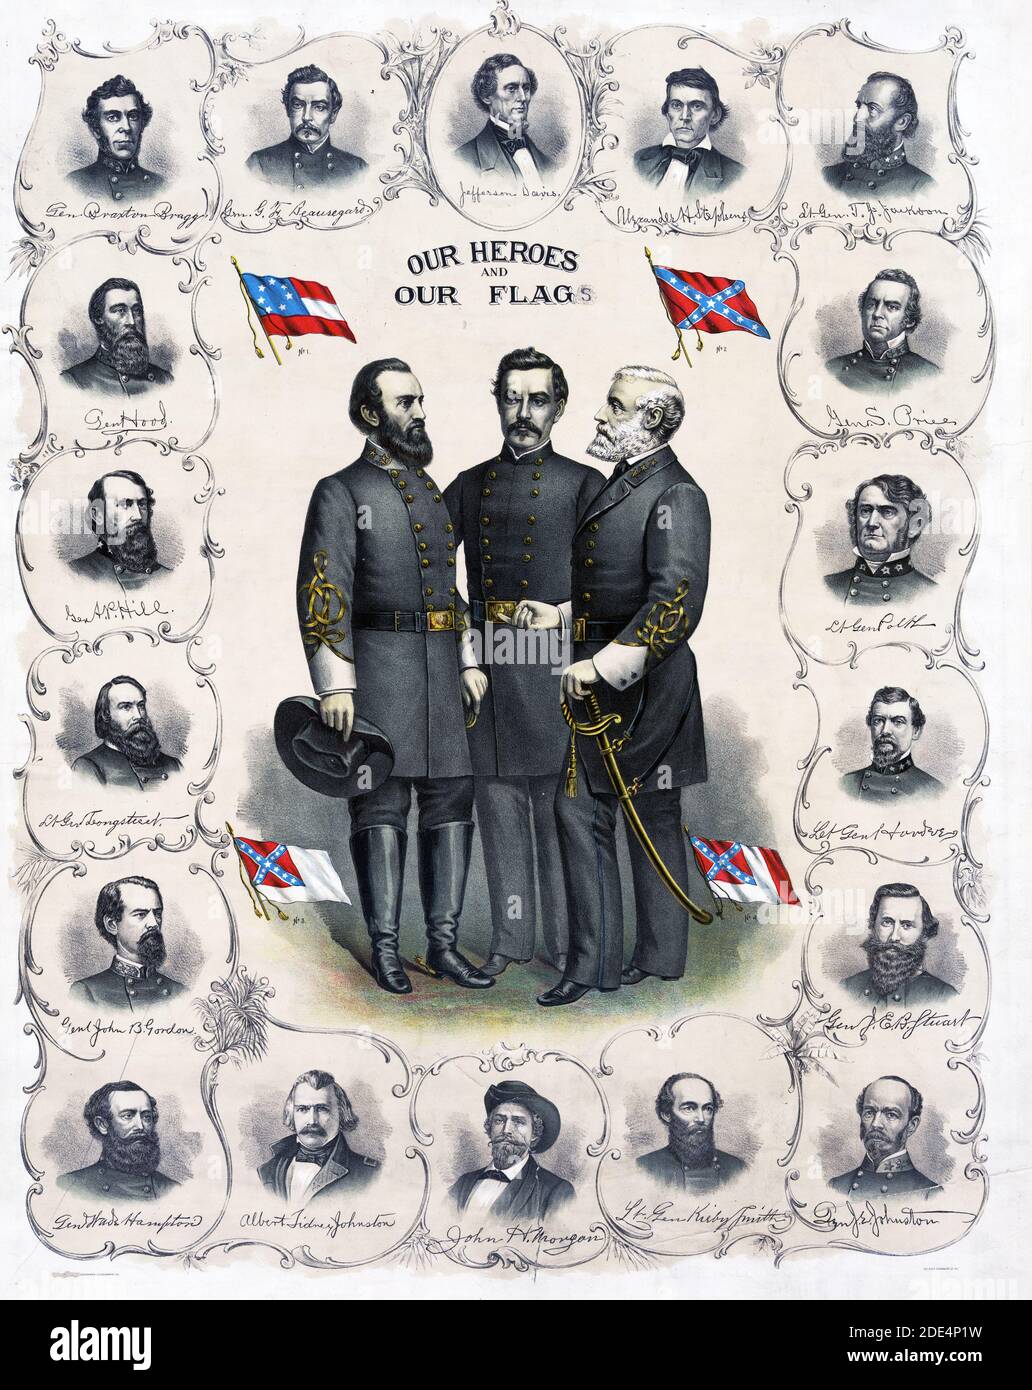 Drucken mit voller Länge Porträts von Robert E. Lee, Stonewall Jackson und G.T. Beauregard mit vier Versionen der Confederate Flag durch Büste Porträts von Jefferson Davis und Konföderierten Offizieren umgeben. Stockfoto